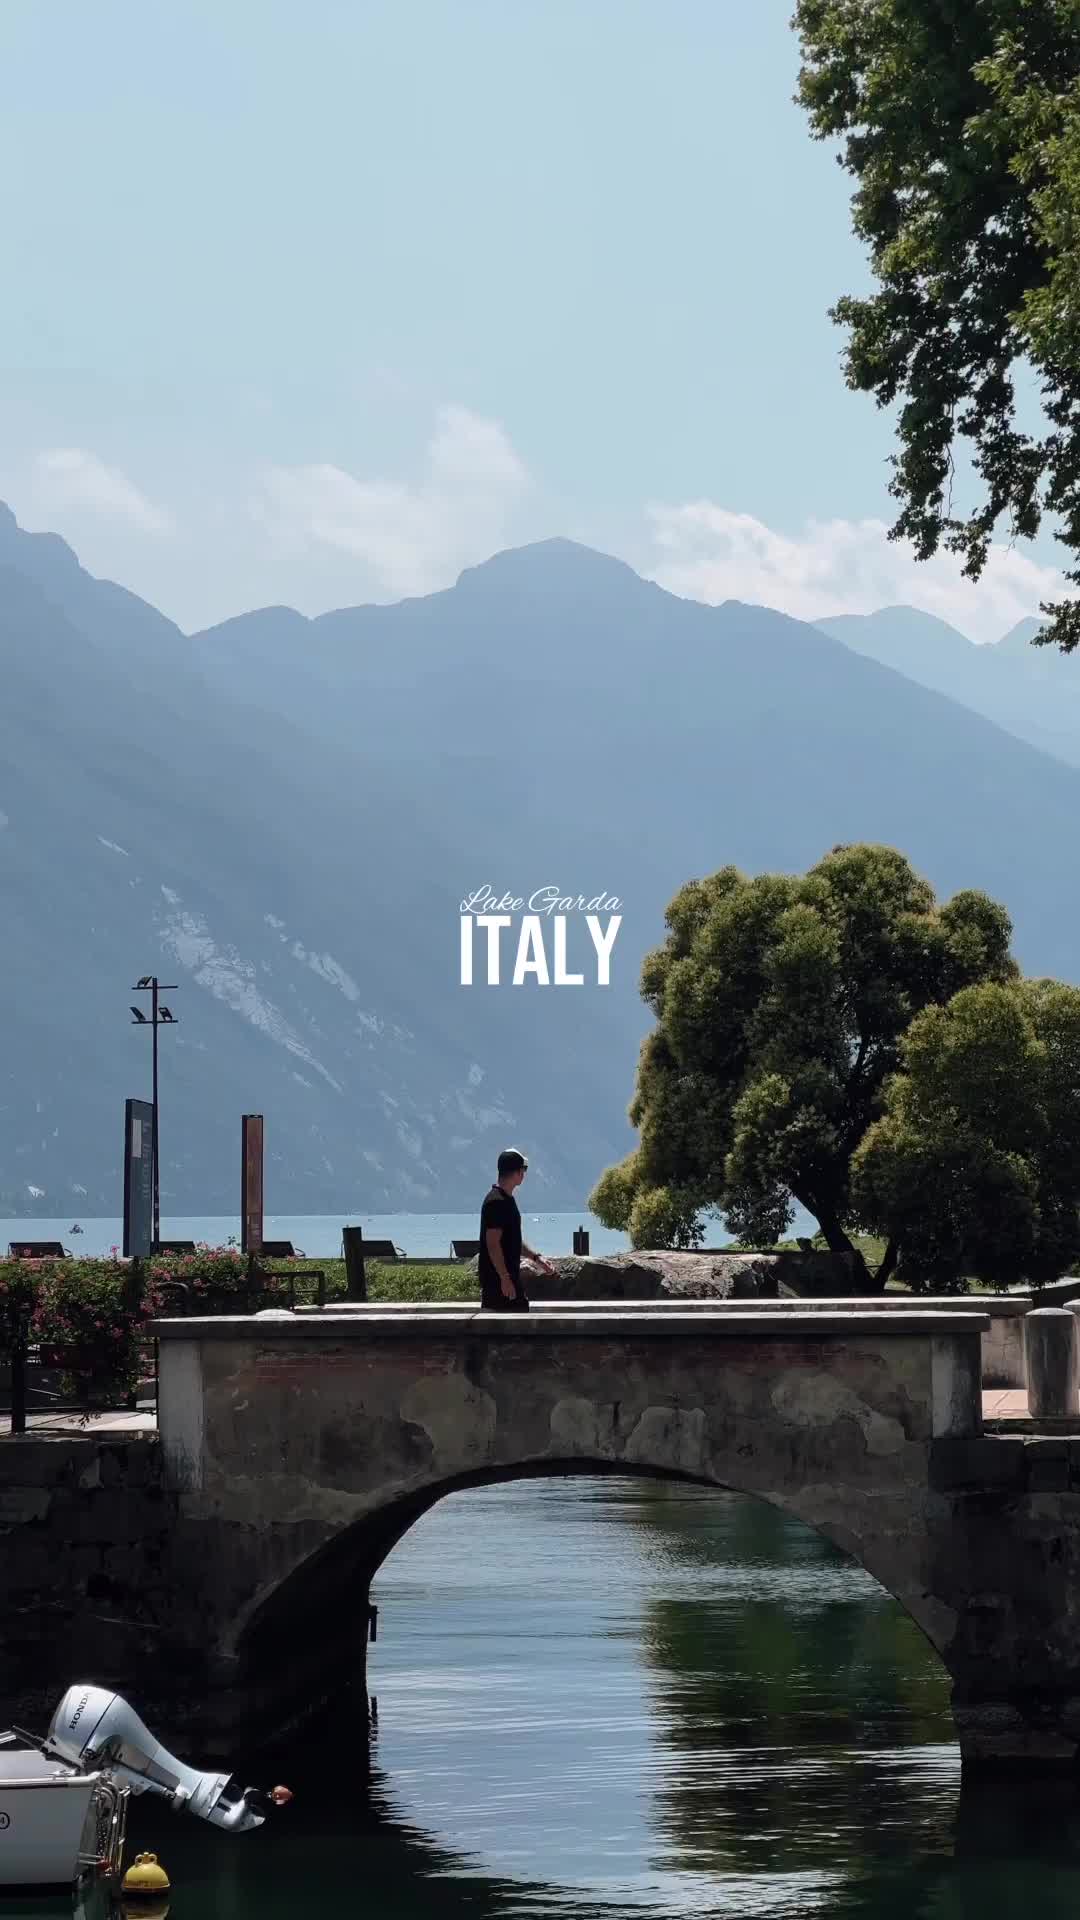 The Ultimate Italian Summer Dream in Riva del Garda